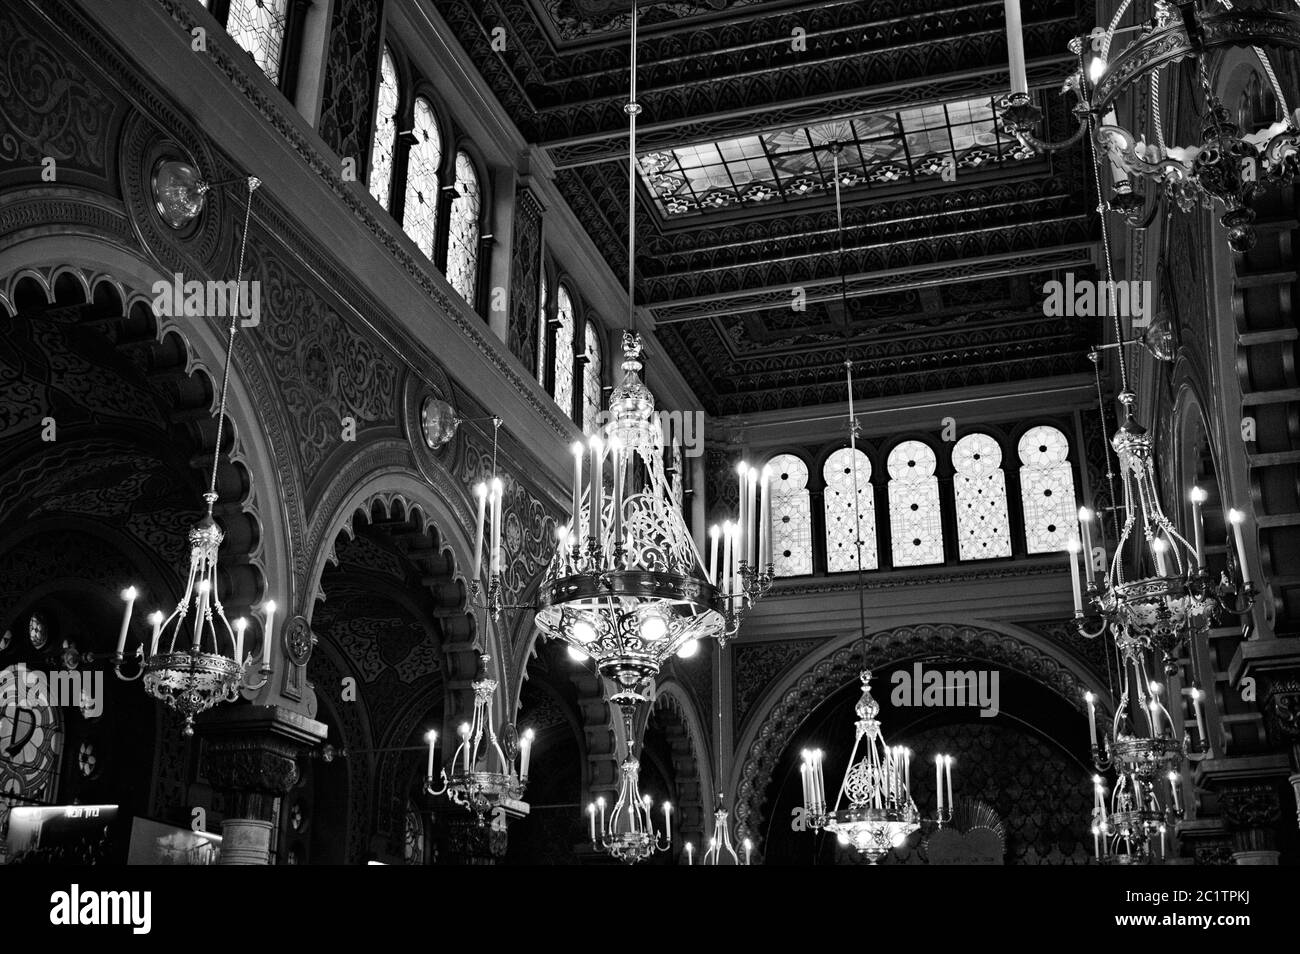 Praga, Repubblica Ceca - 30 dicembre 2019: Interno della sinagoga Jeruzalémská che ha uno stile moresco con molti castighi, archi orientali, golde Foto Stock